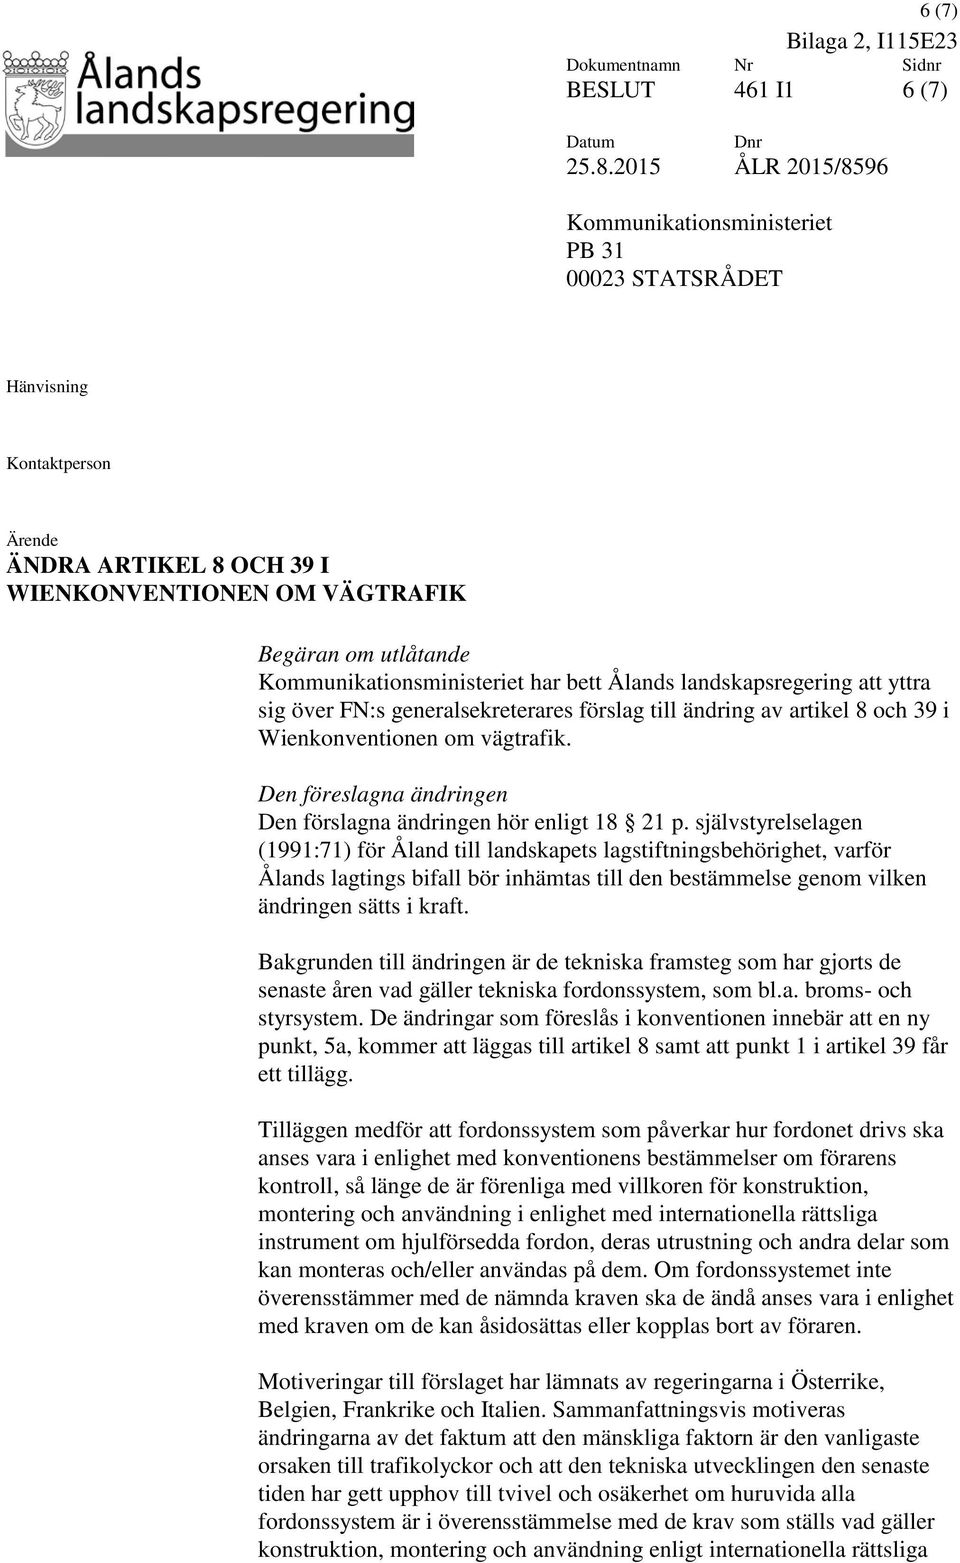 Kommunikationsministeriet har bett Ålands landskapsregering att yttra sig över FN:s generalsekreterares förslag till ändring av artikel 8 och 39 i Wienkonventionen om vägtrafik.